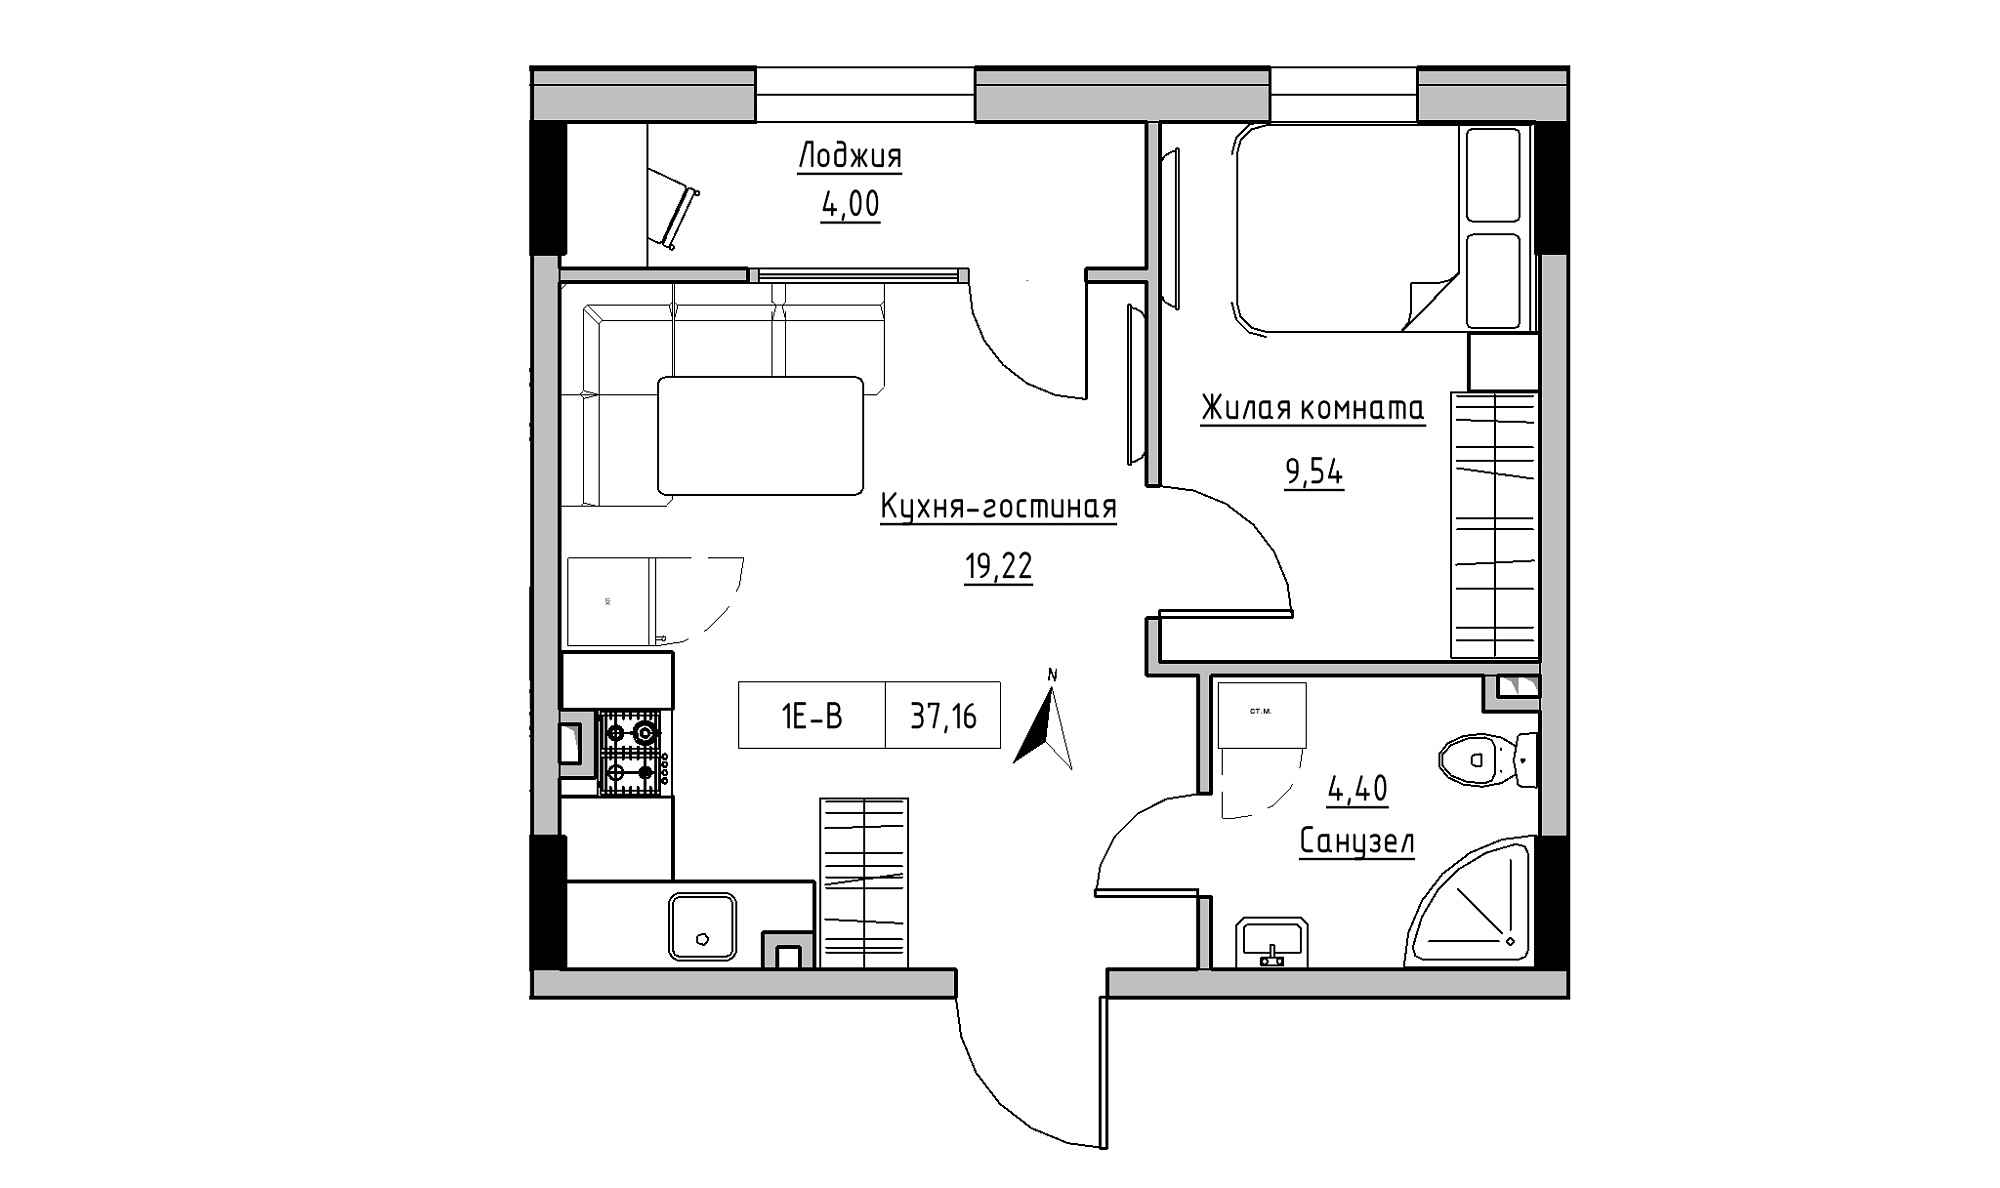 Планування 1-к квартира площею 37.16м2, KS-025-01/0008.